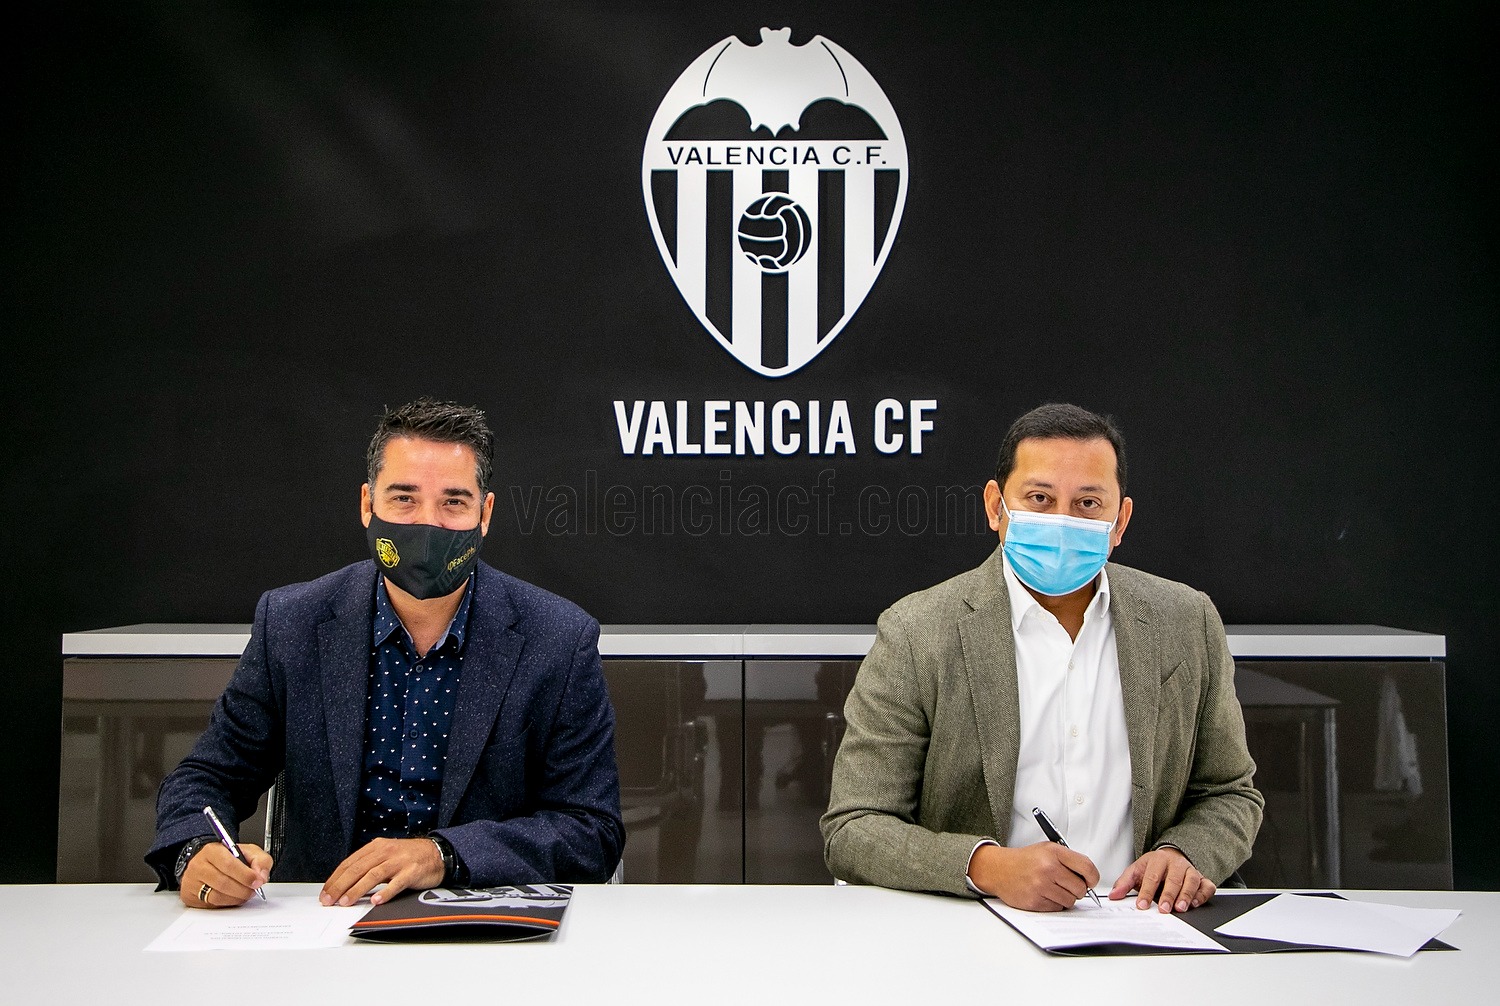 Assinatura do Contrato com Valencia C.F.